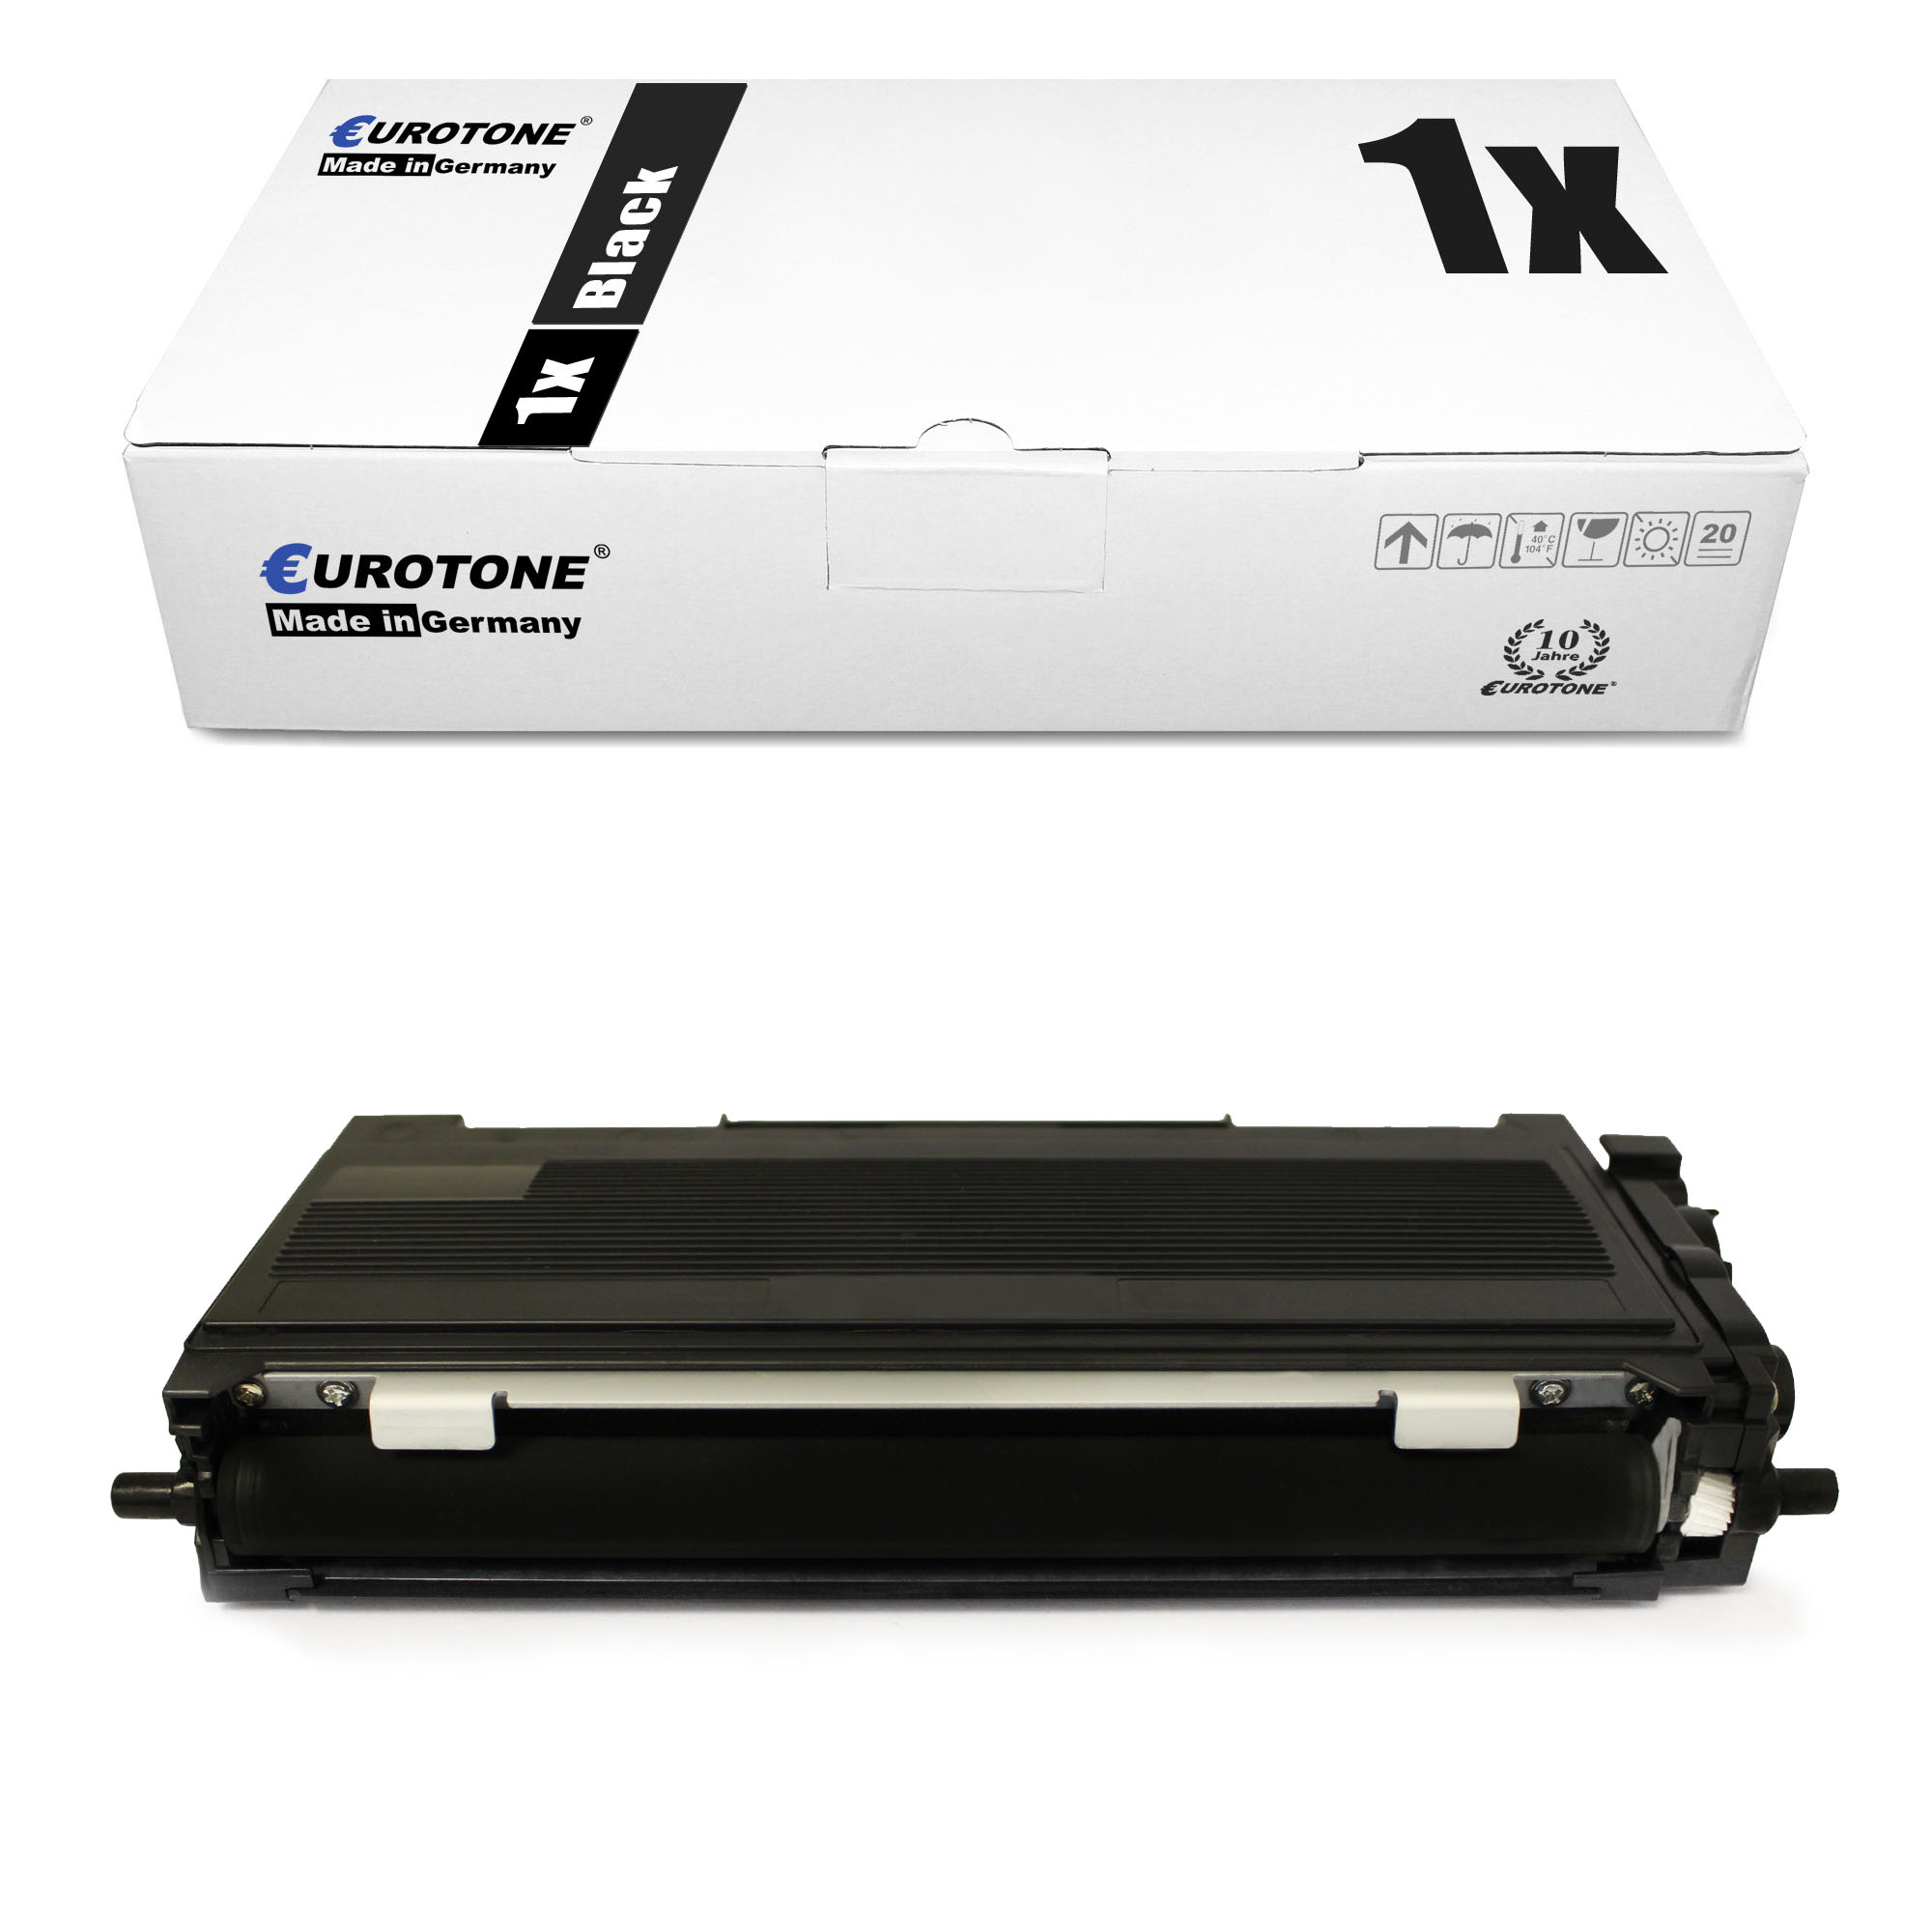 Toner XL kompatibel für Brother TN-2000 HL-2030 MFC-7820 MFC-7820N TN2000